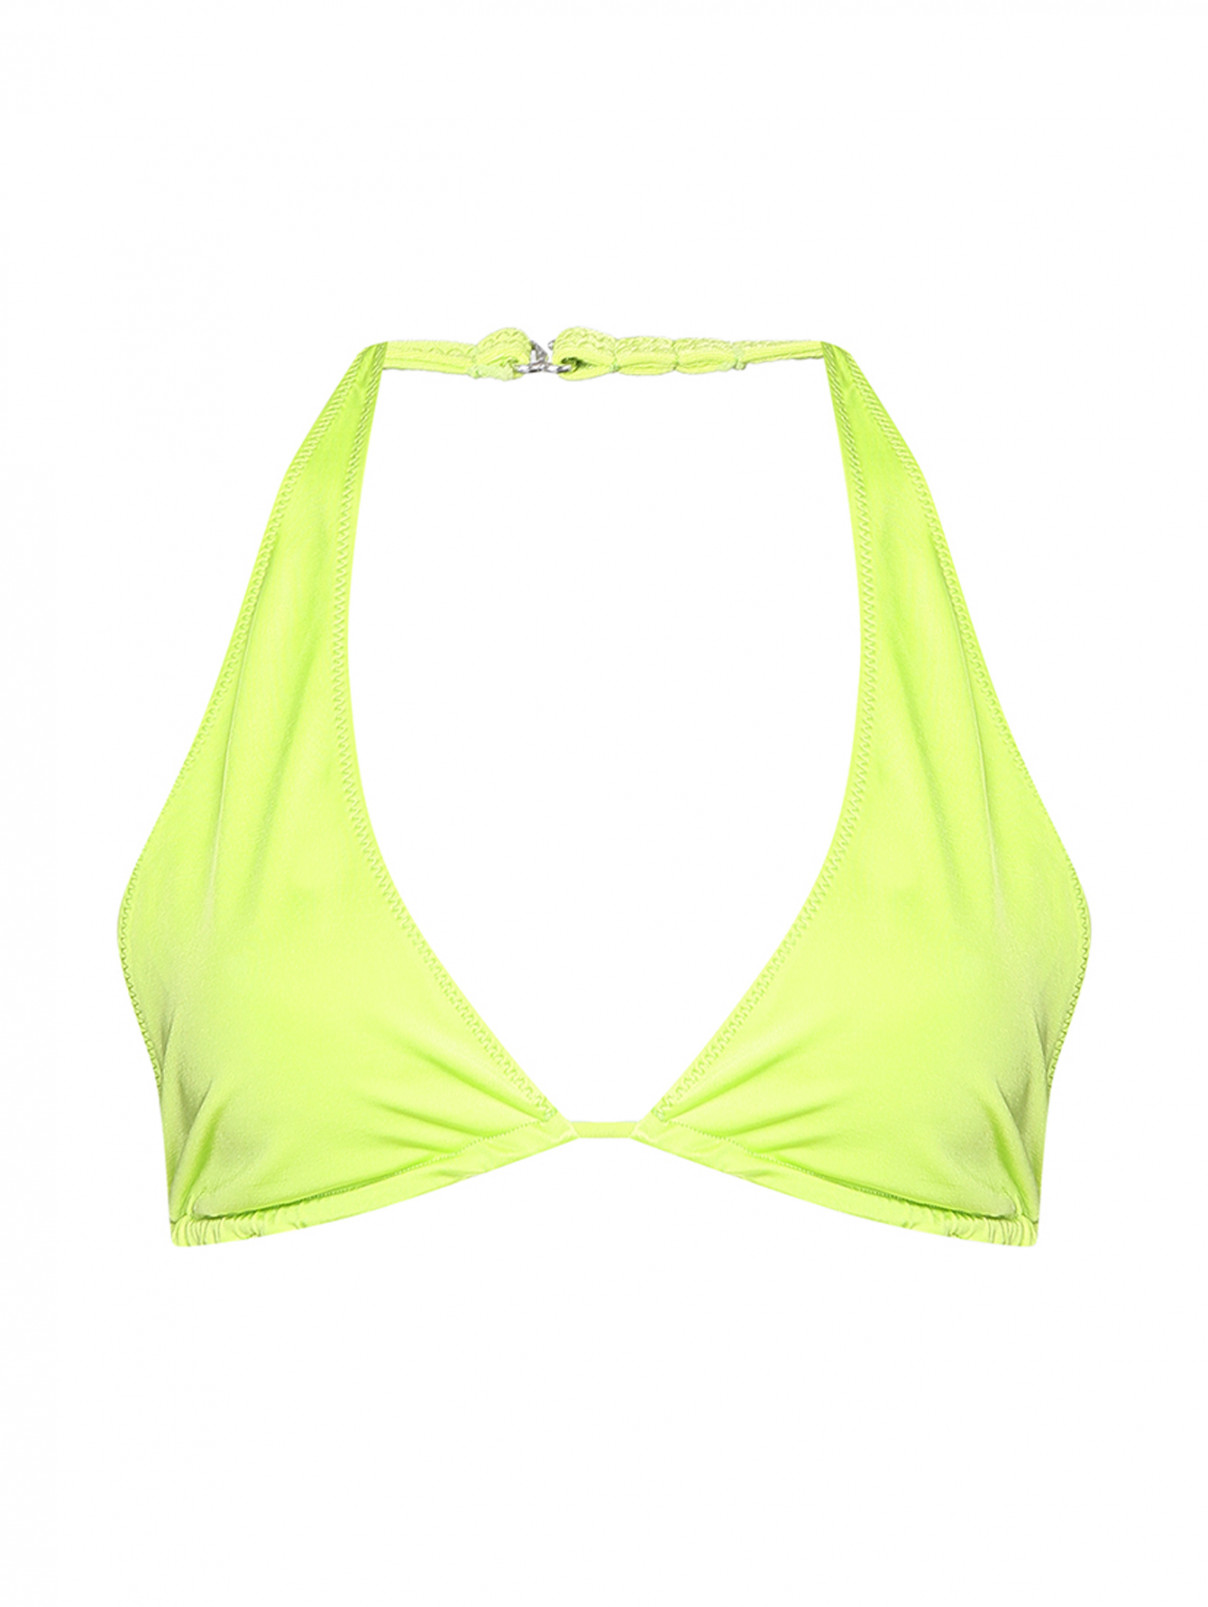 Купальник верх однотонный Frankies Bikinis  –  Общий вид  – Цвет:  Зеленый